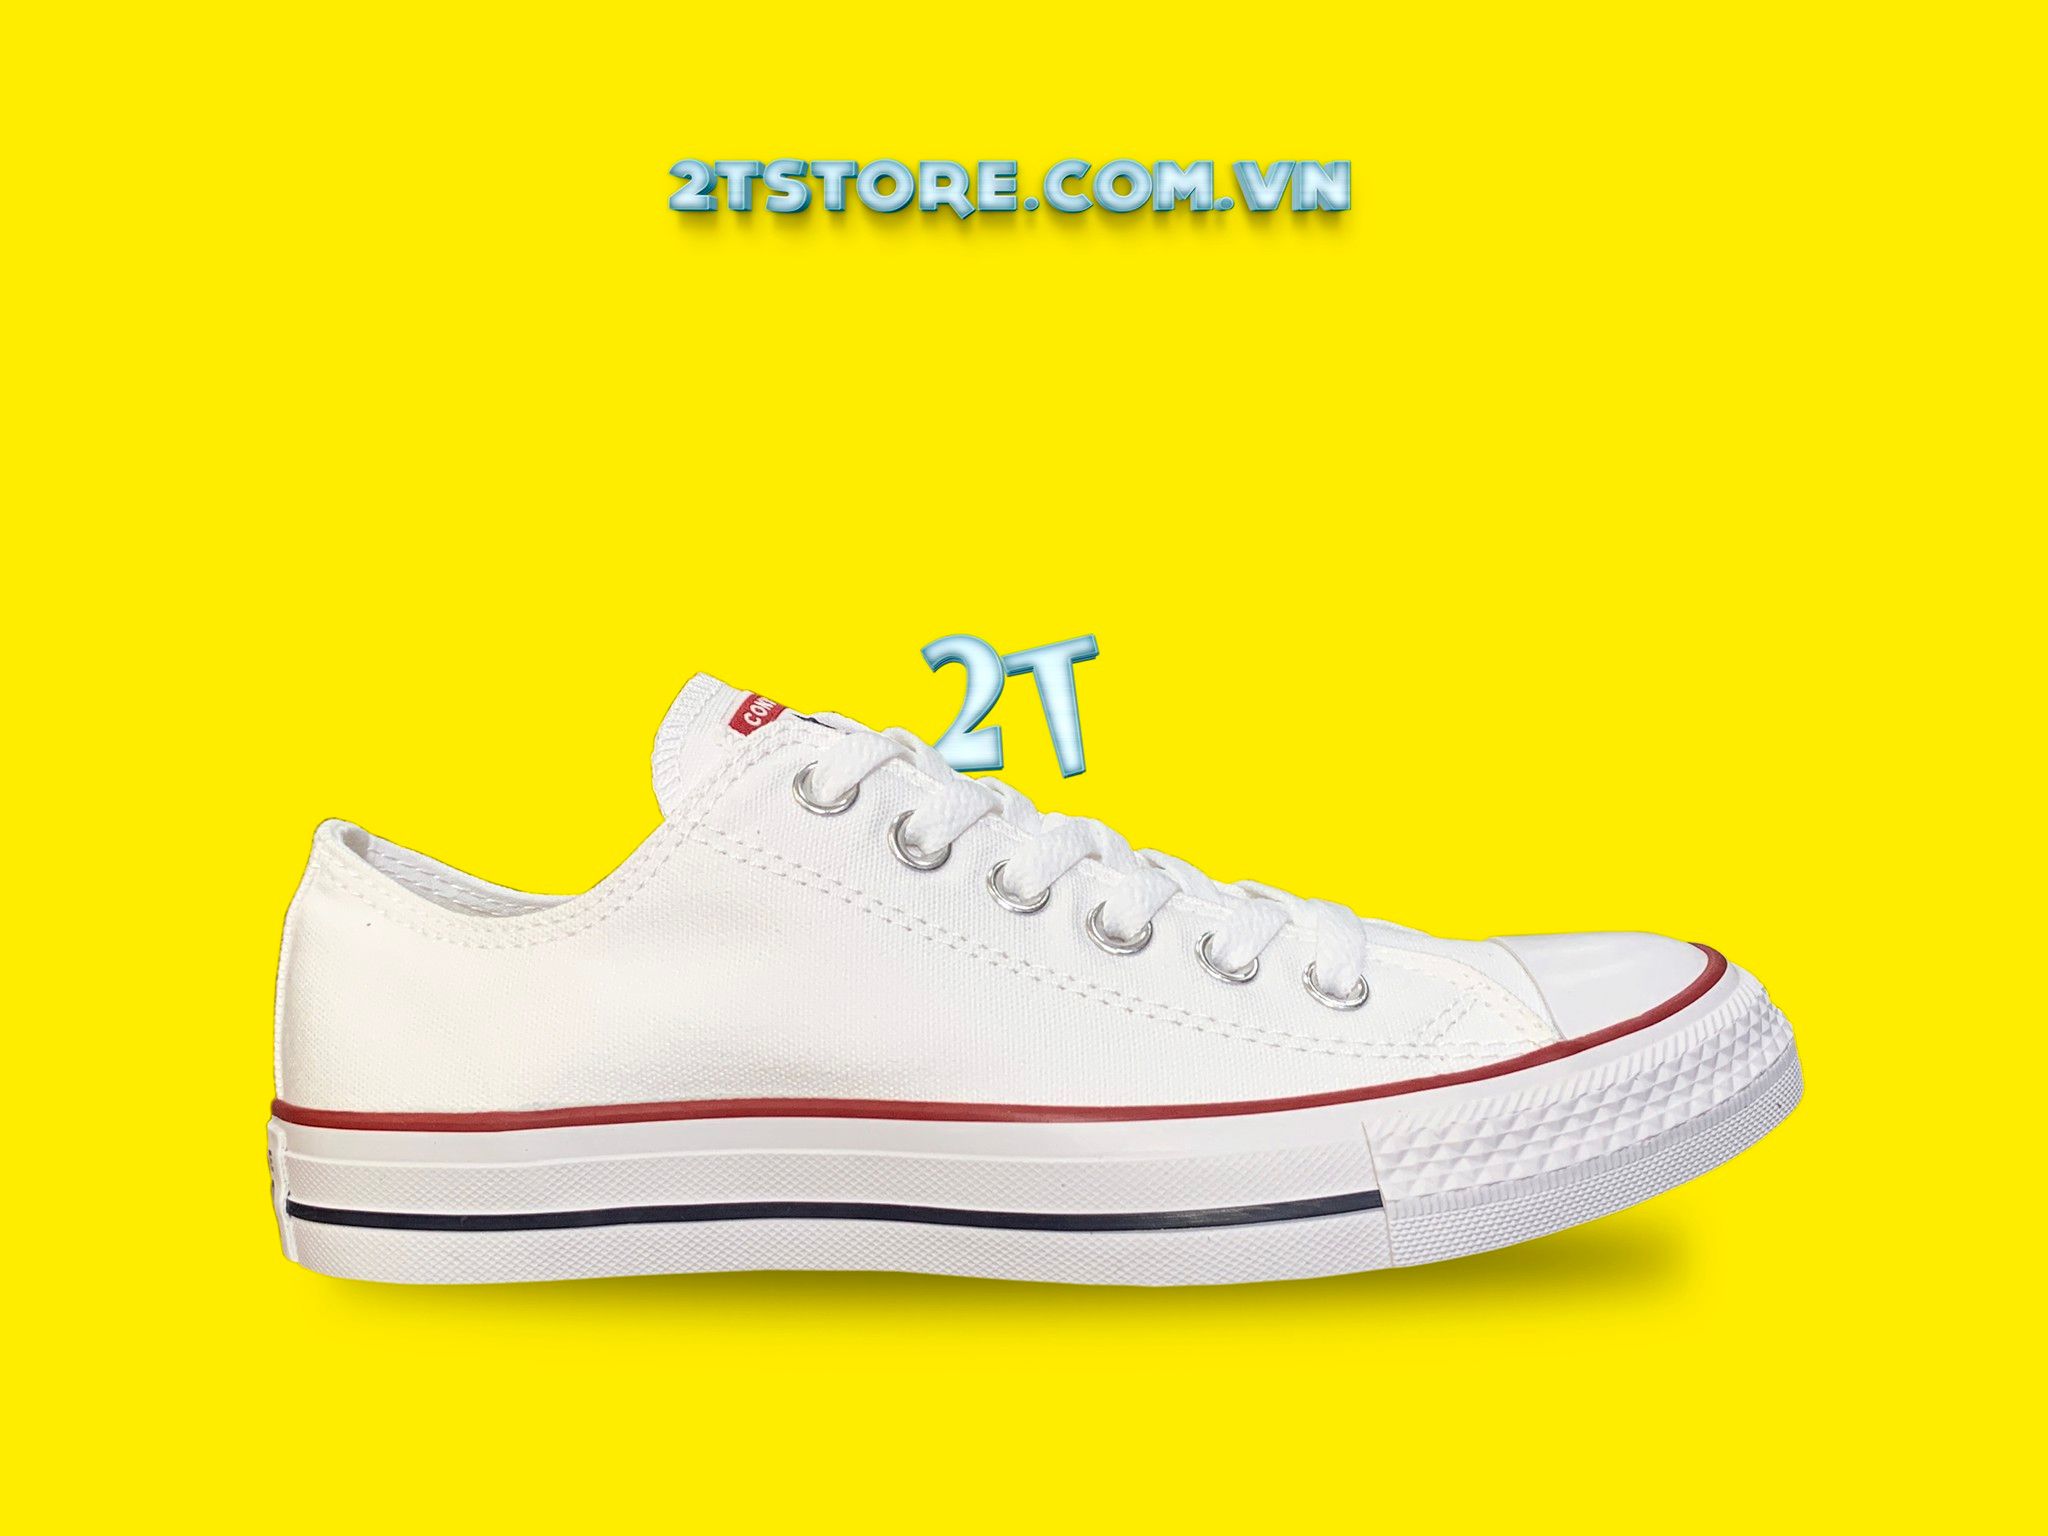 Giày Converse Classic Trắng Cổ Thấp Chính Hãng – 2TStore